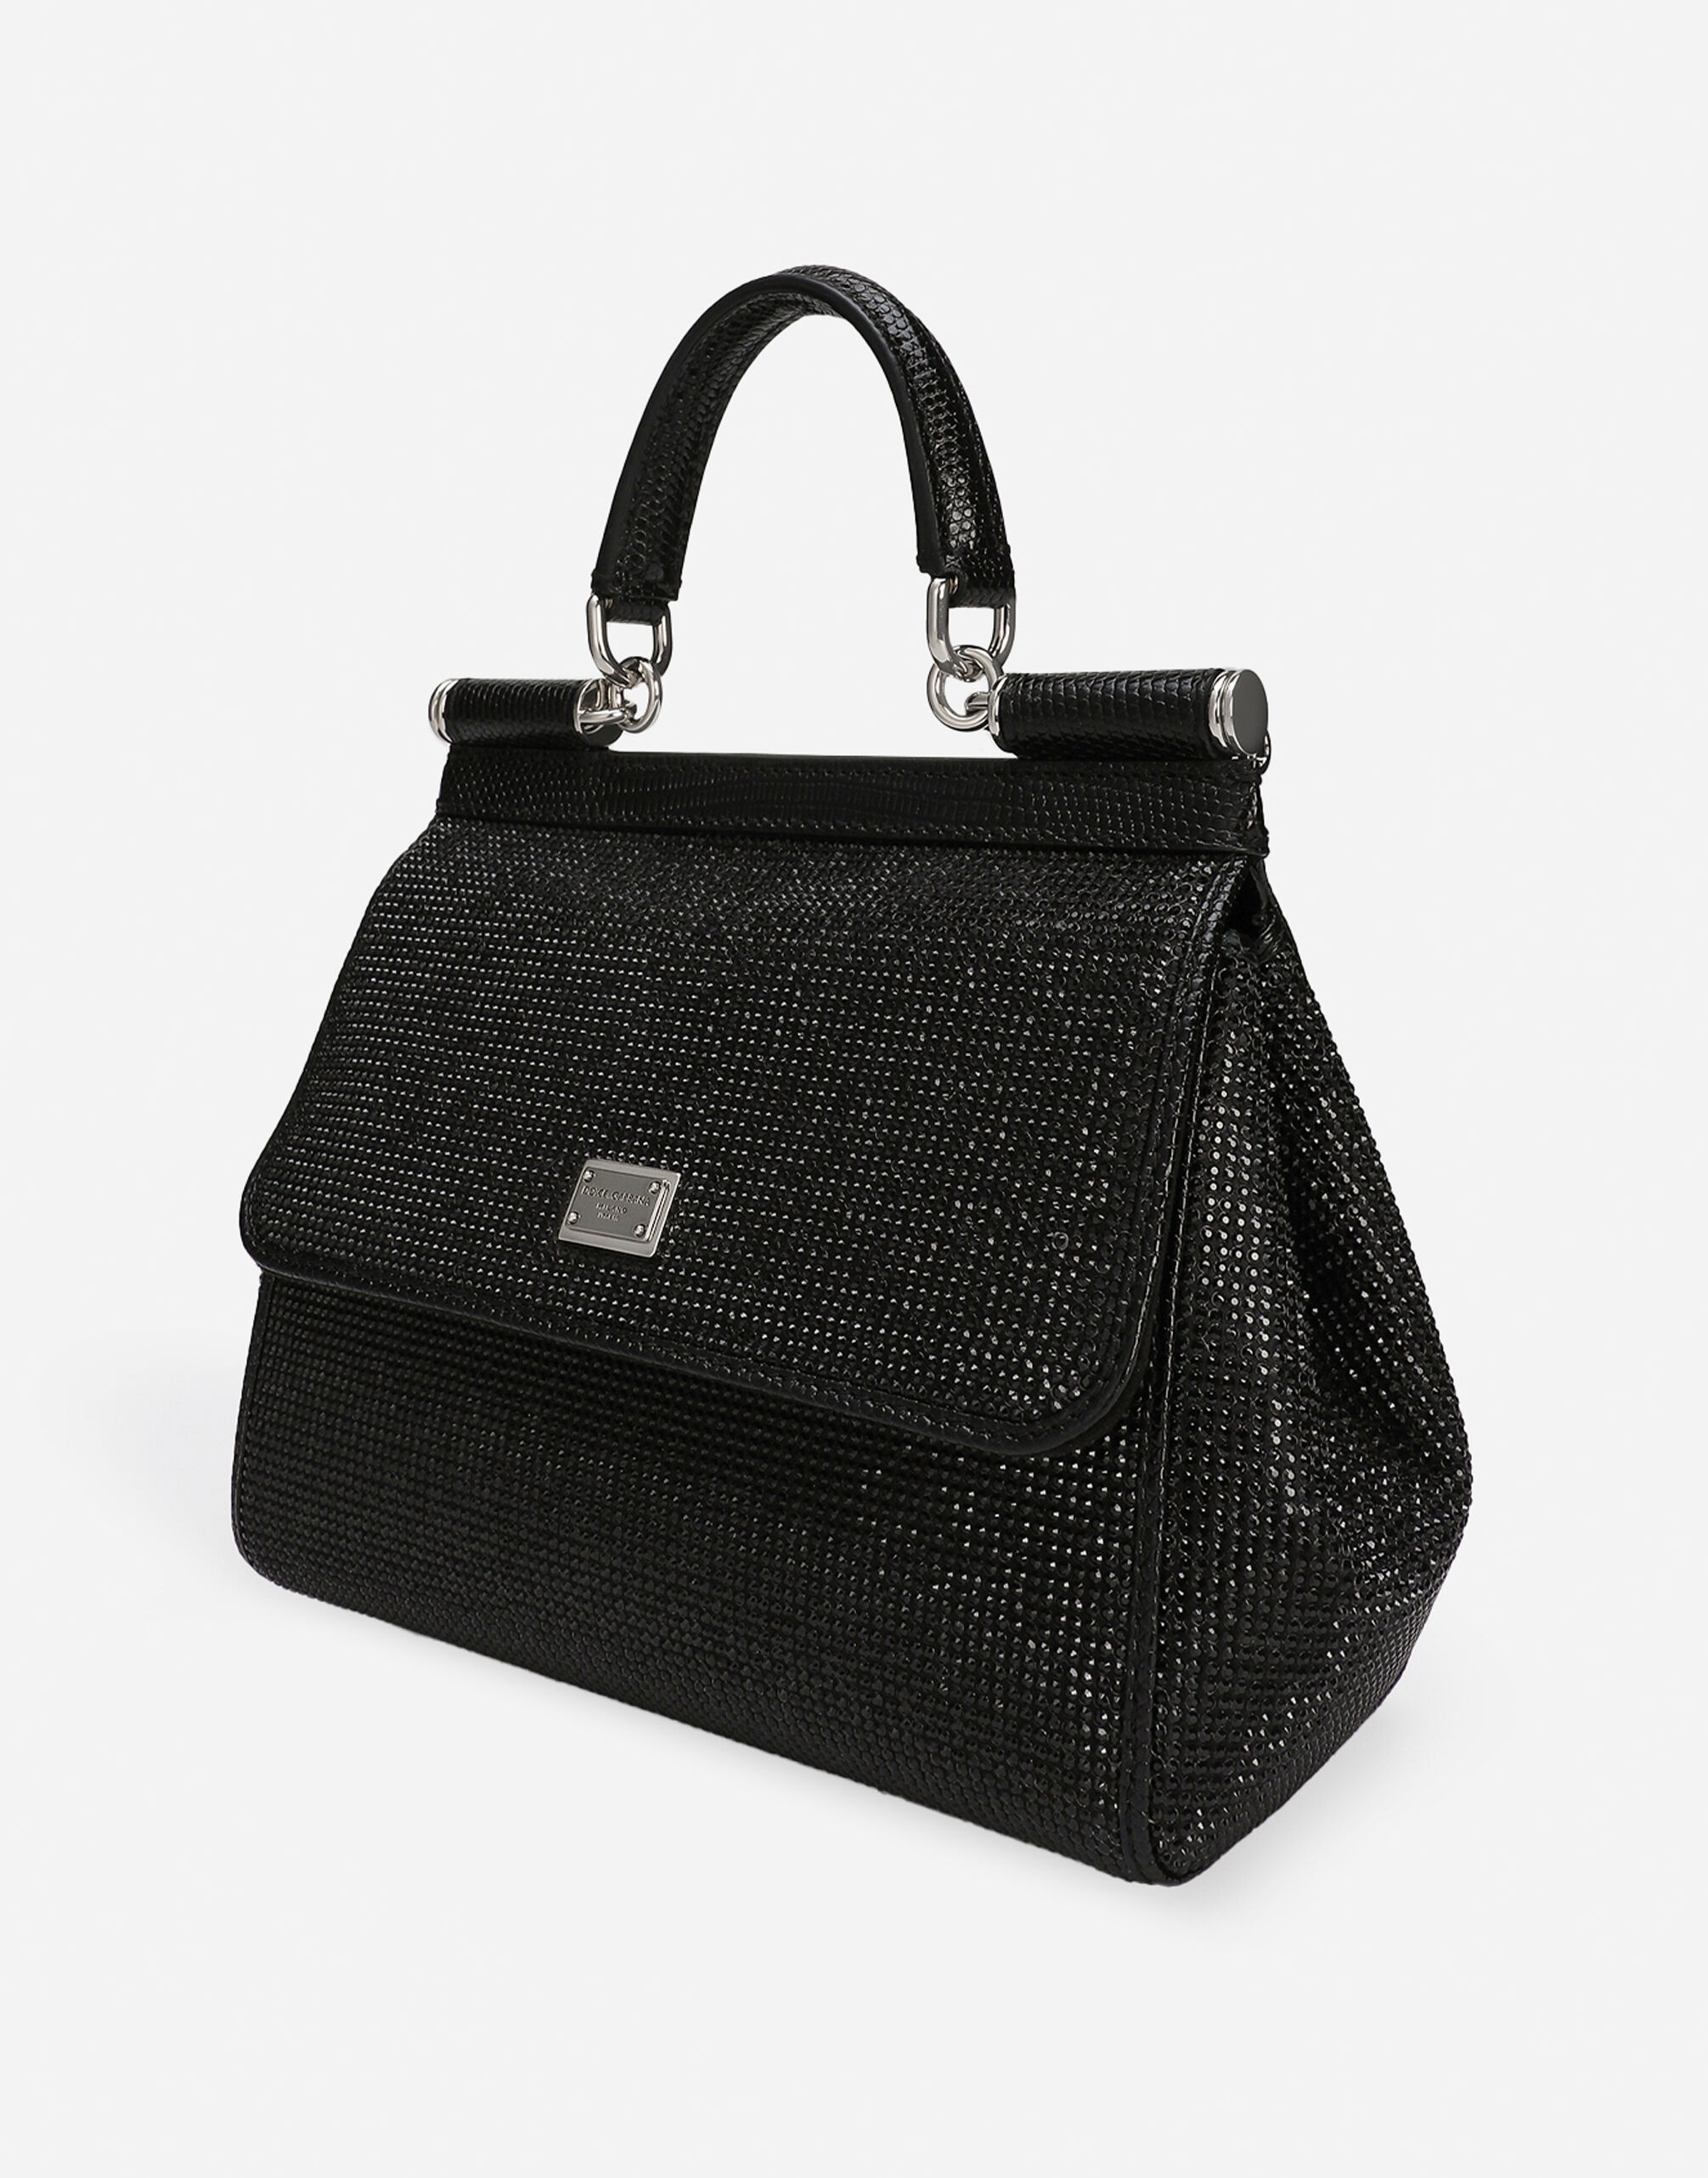 Medium Sicily handbag - 9